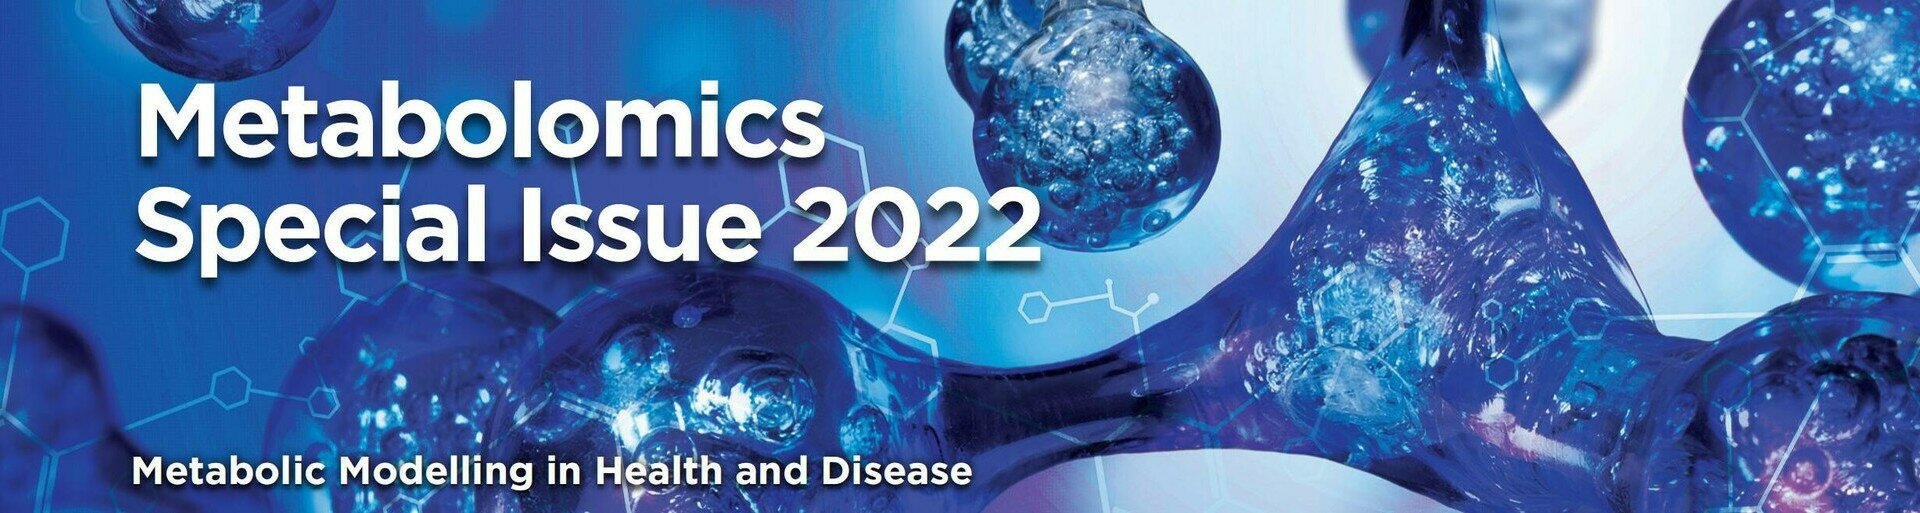 绘云生物创始人受邀编辑《Journal of Proteome Research》2022 代谢组学专刊